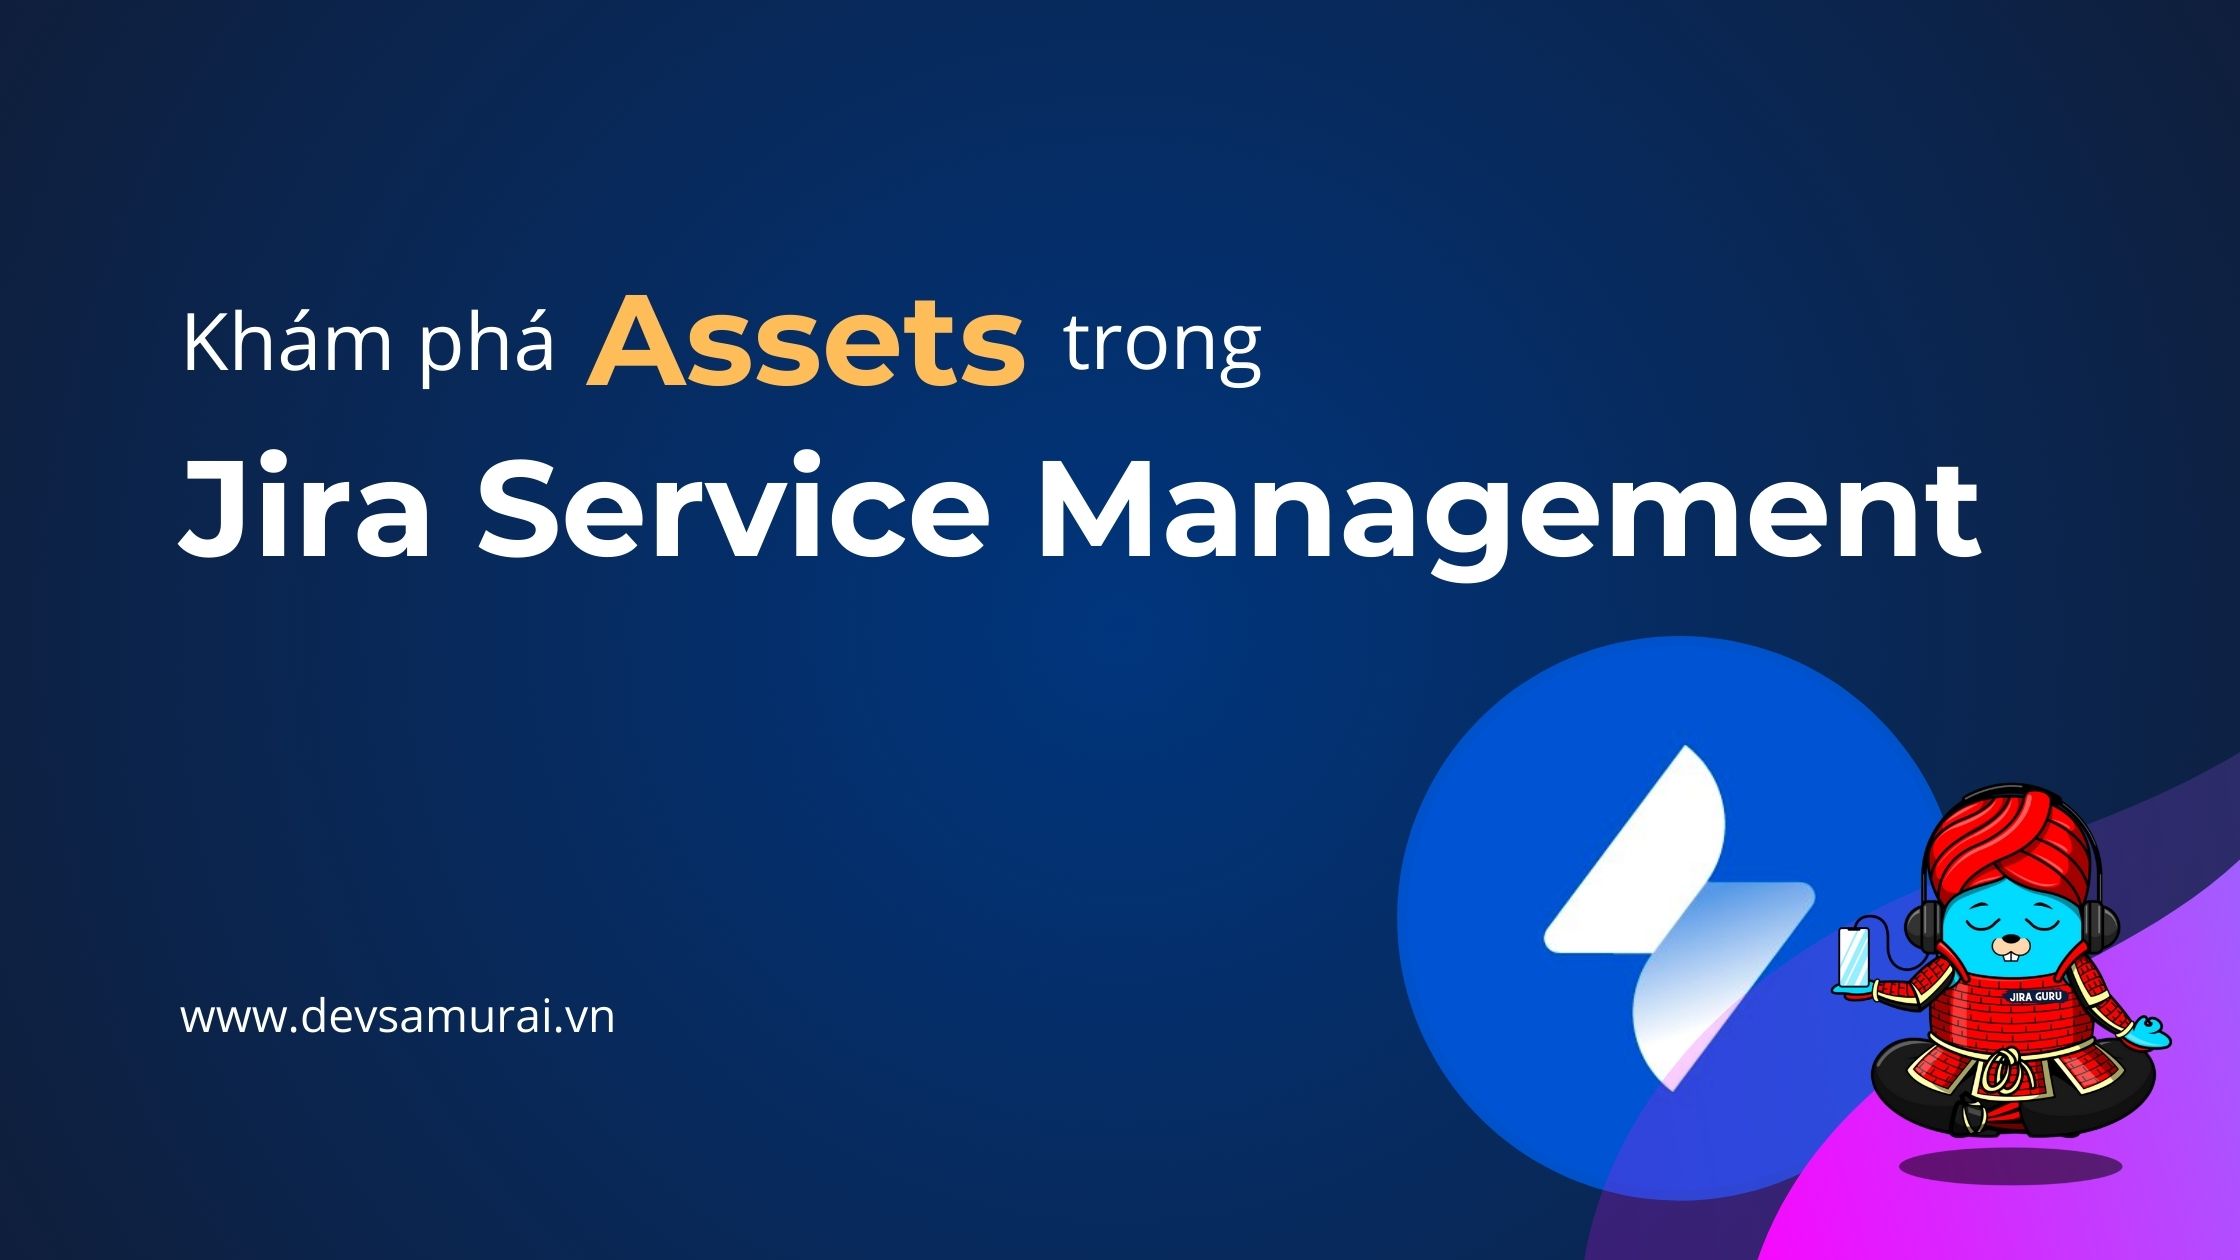 Assets trong Jira Service Management